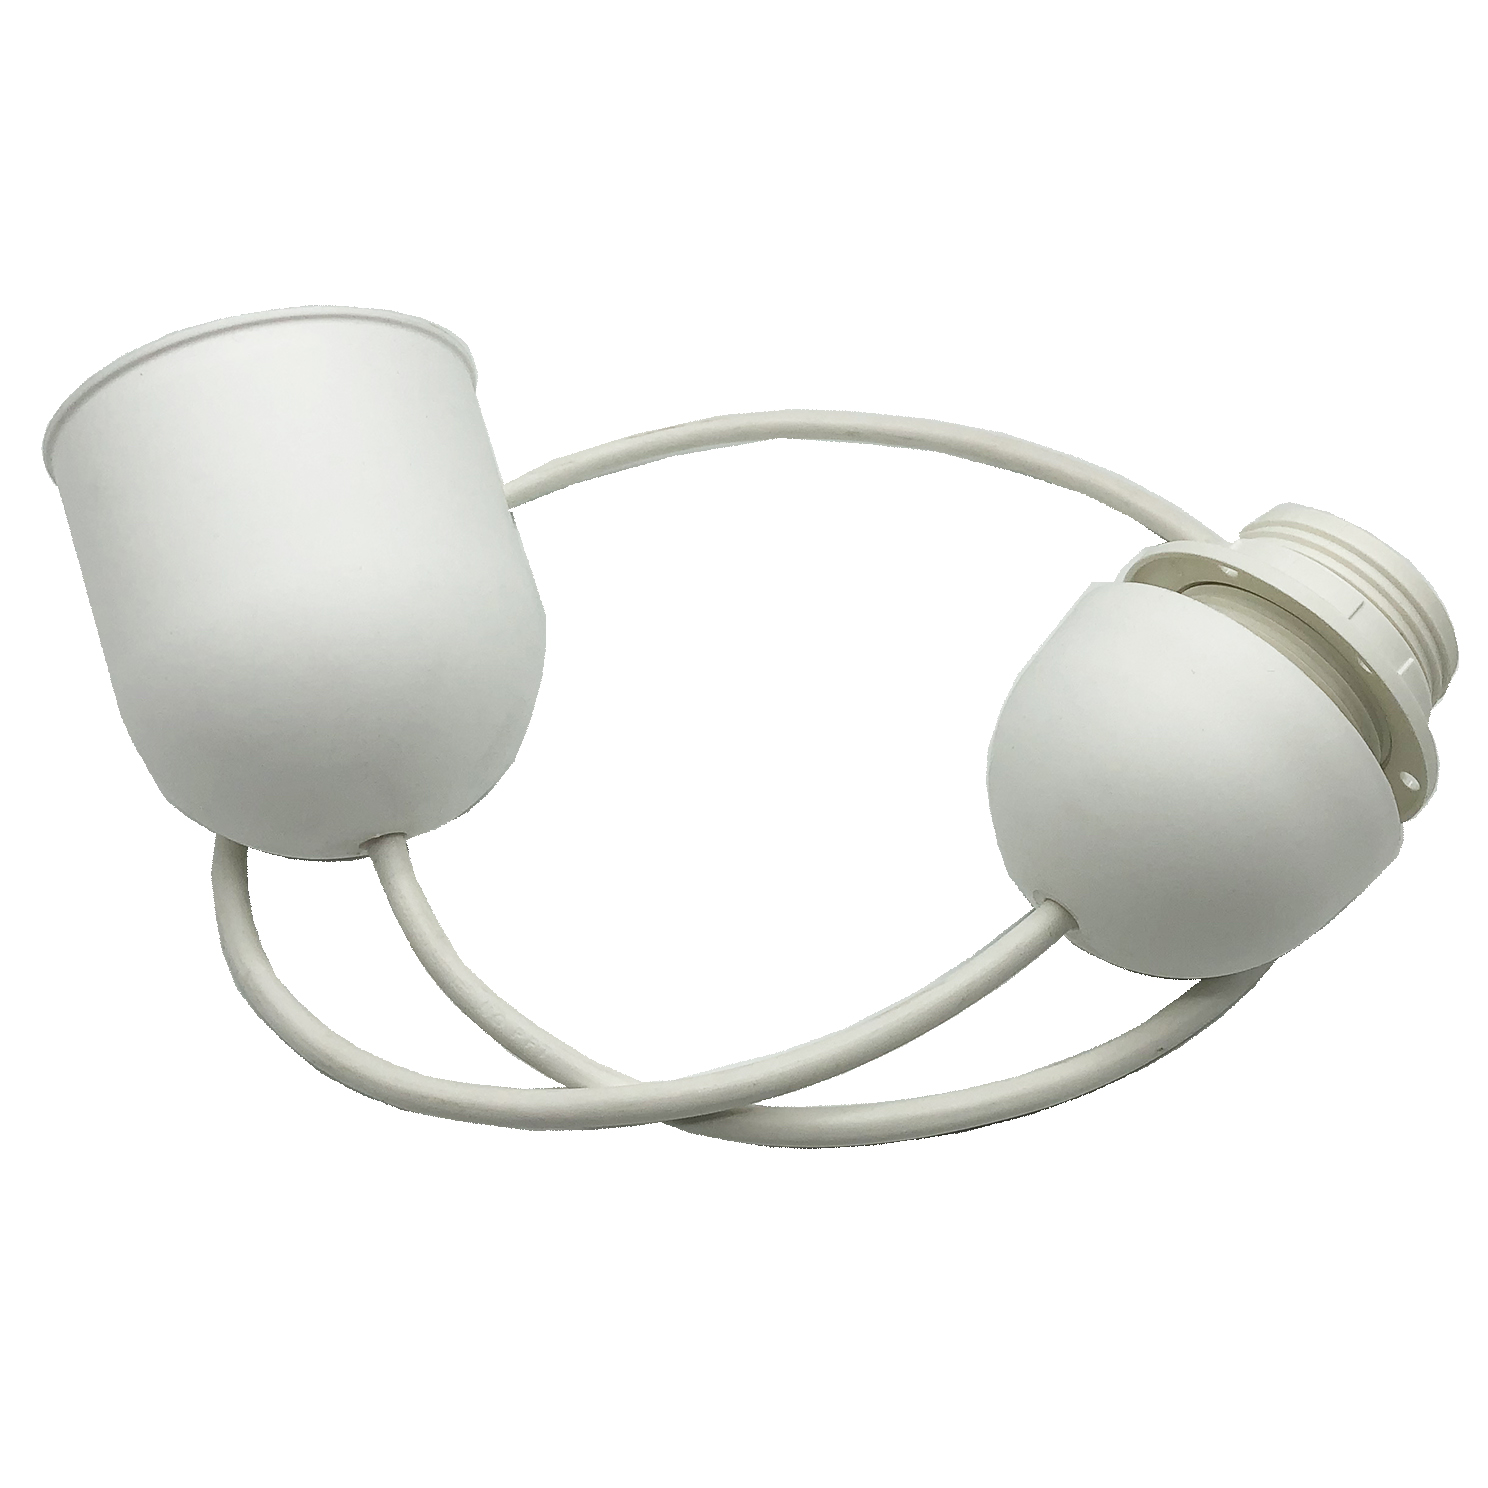 Prefijo Prever consenso Lámpara plástico blanca para colgar con casquillo E27 | Kits portalámparas  con cable